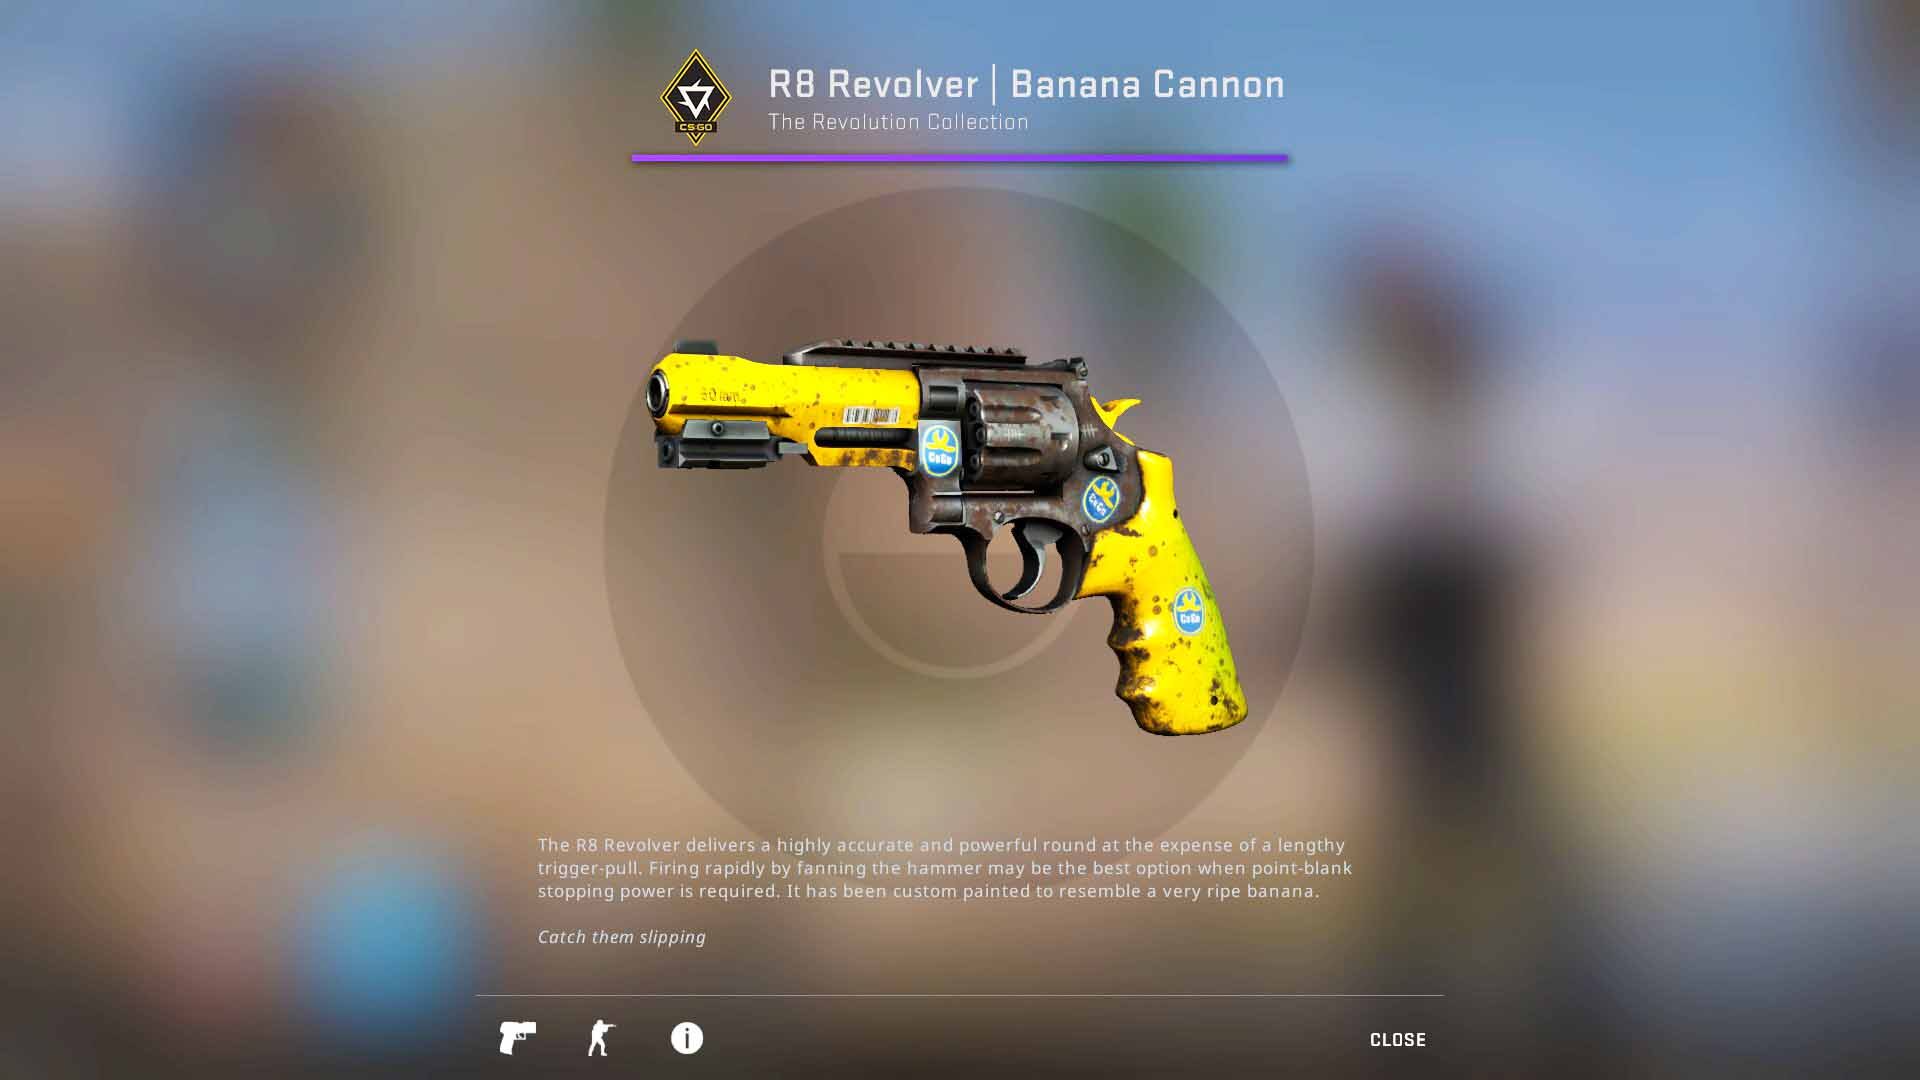 R8 Revolver Banana Cannon, revolution case